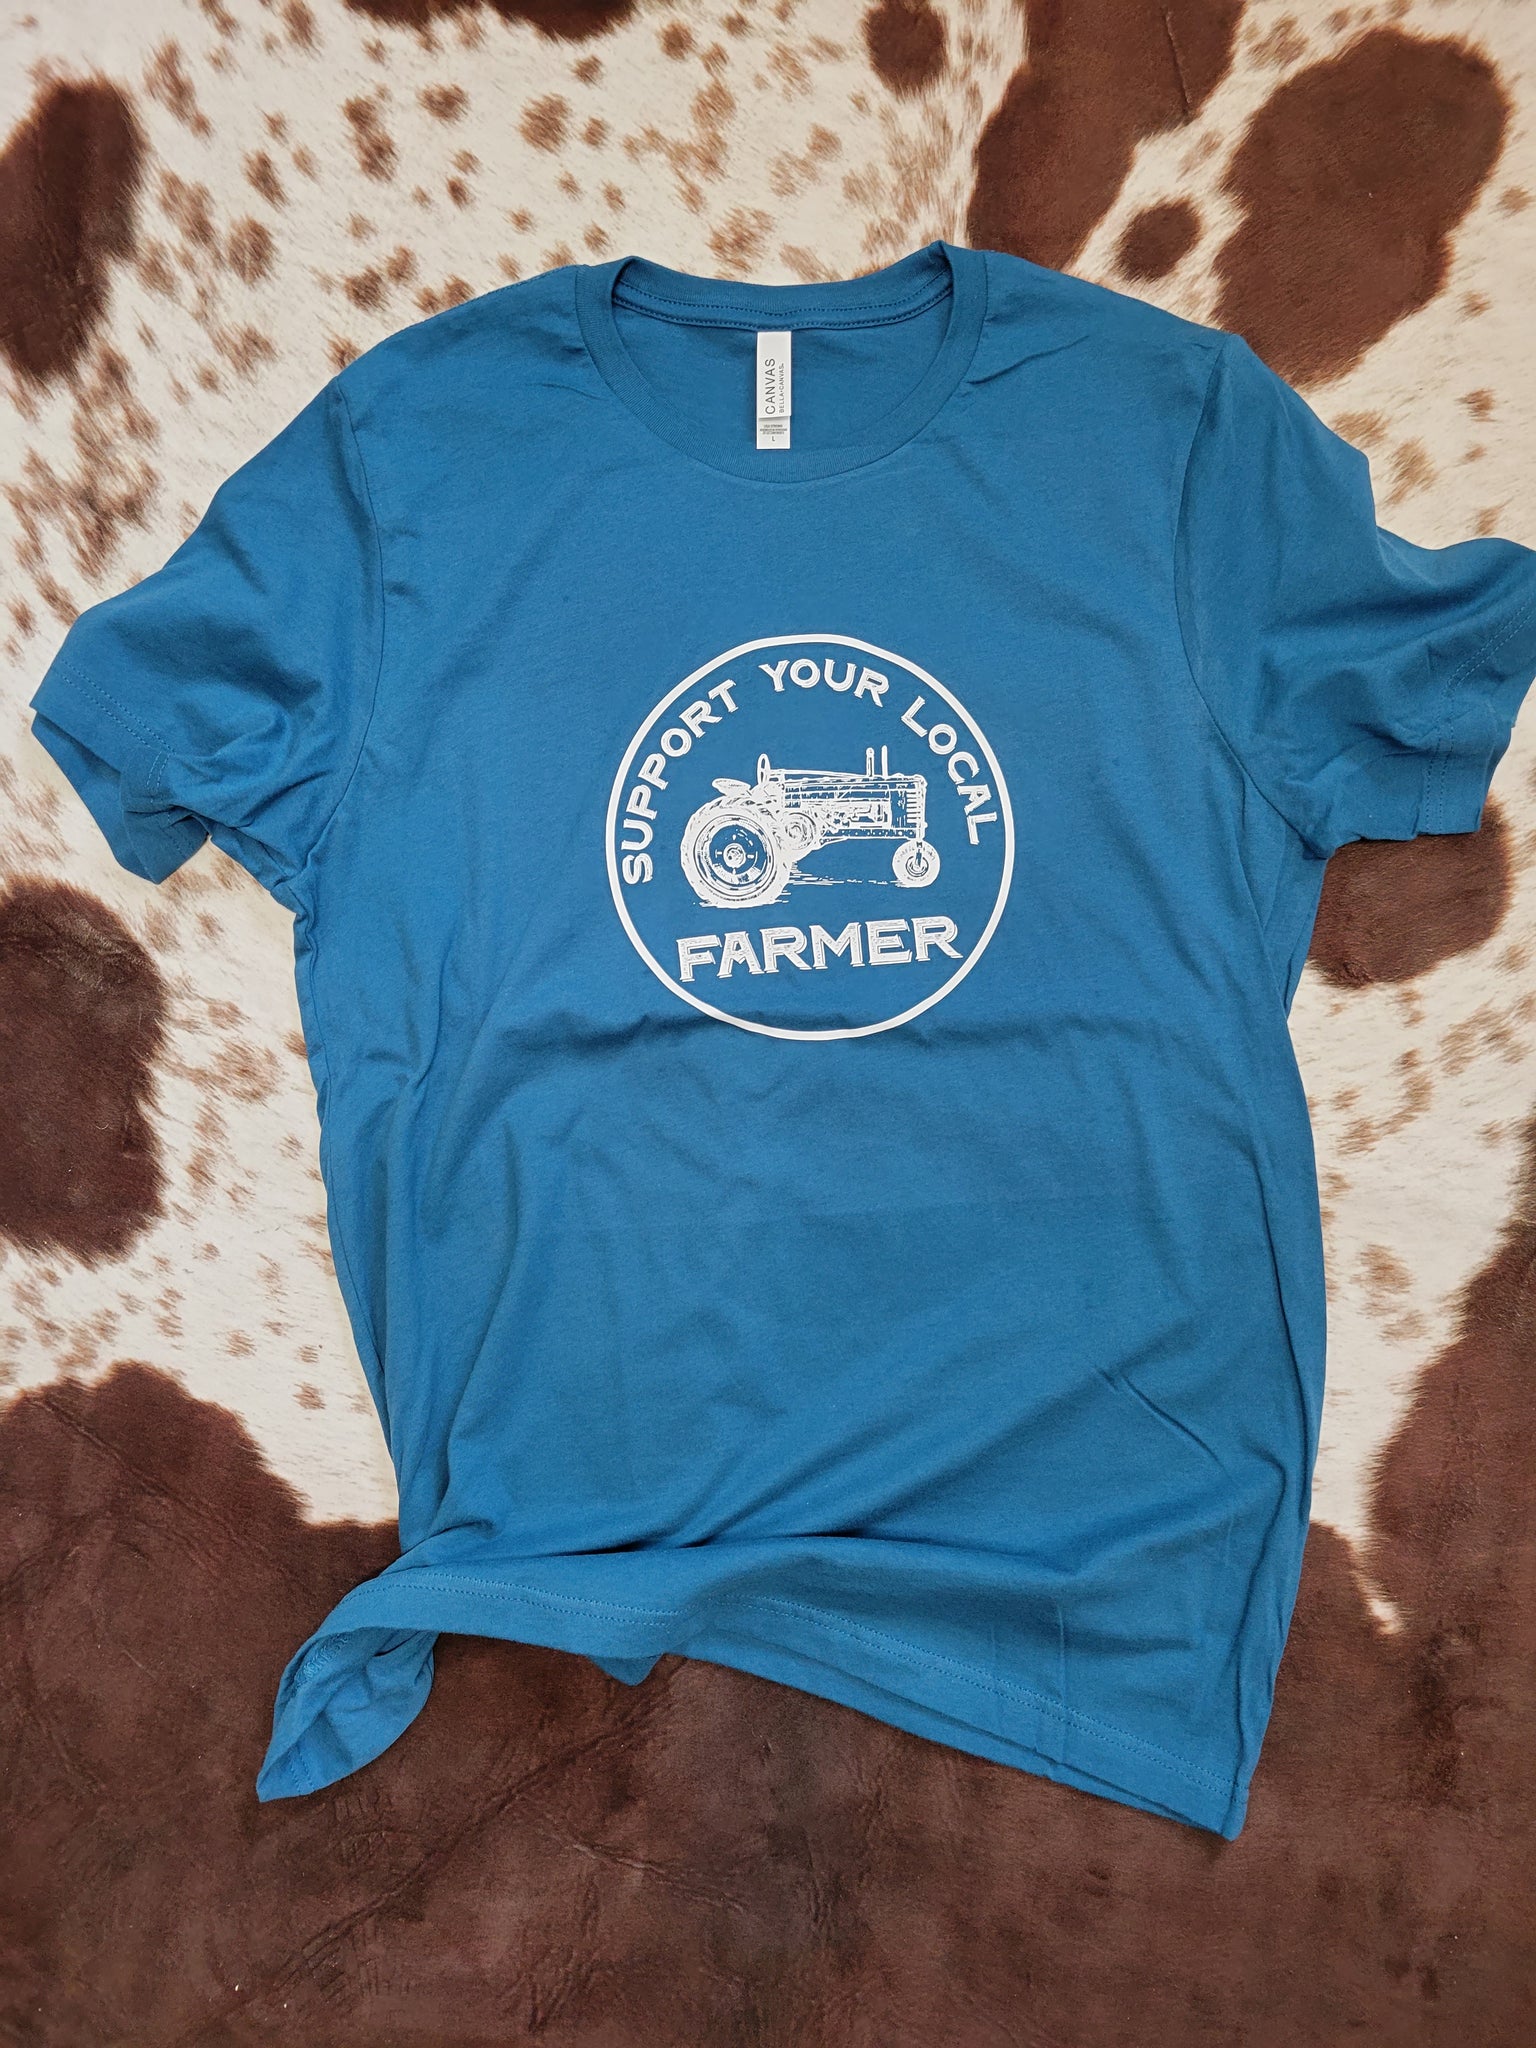 Support Local Farmer